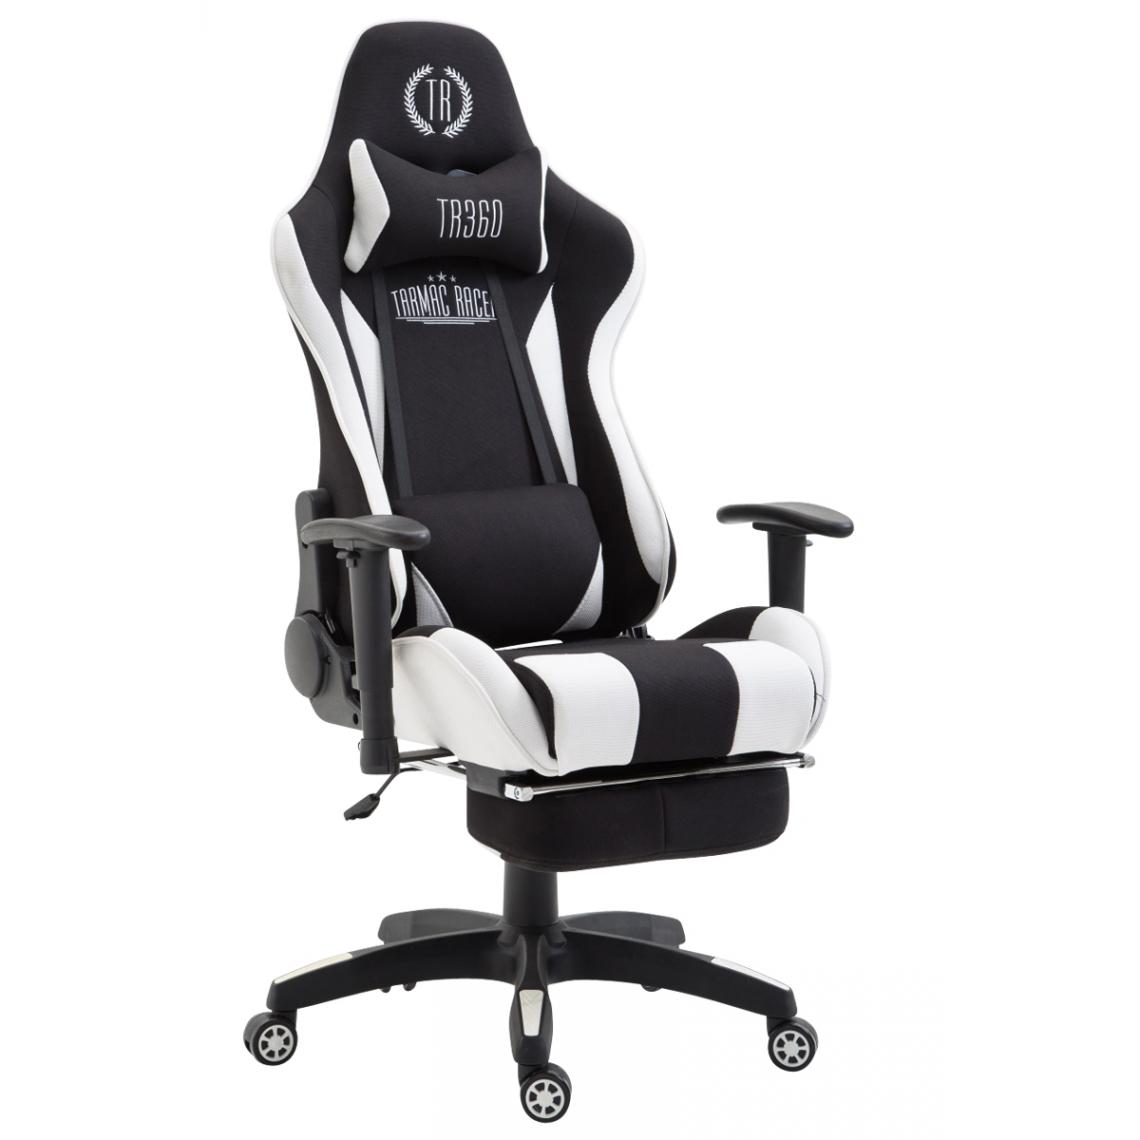 Icaverne - Stylé Chaise de bureau selection Palikir en tissu avec repose-pieds couleur noir et blanc - Chaises